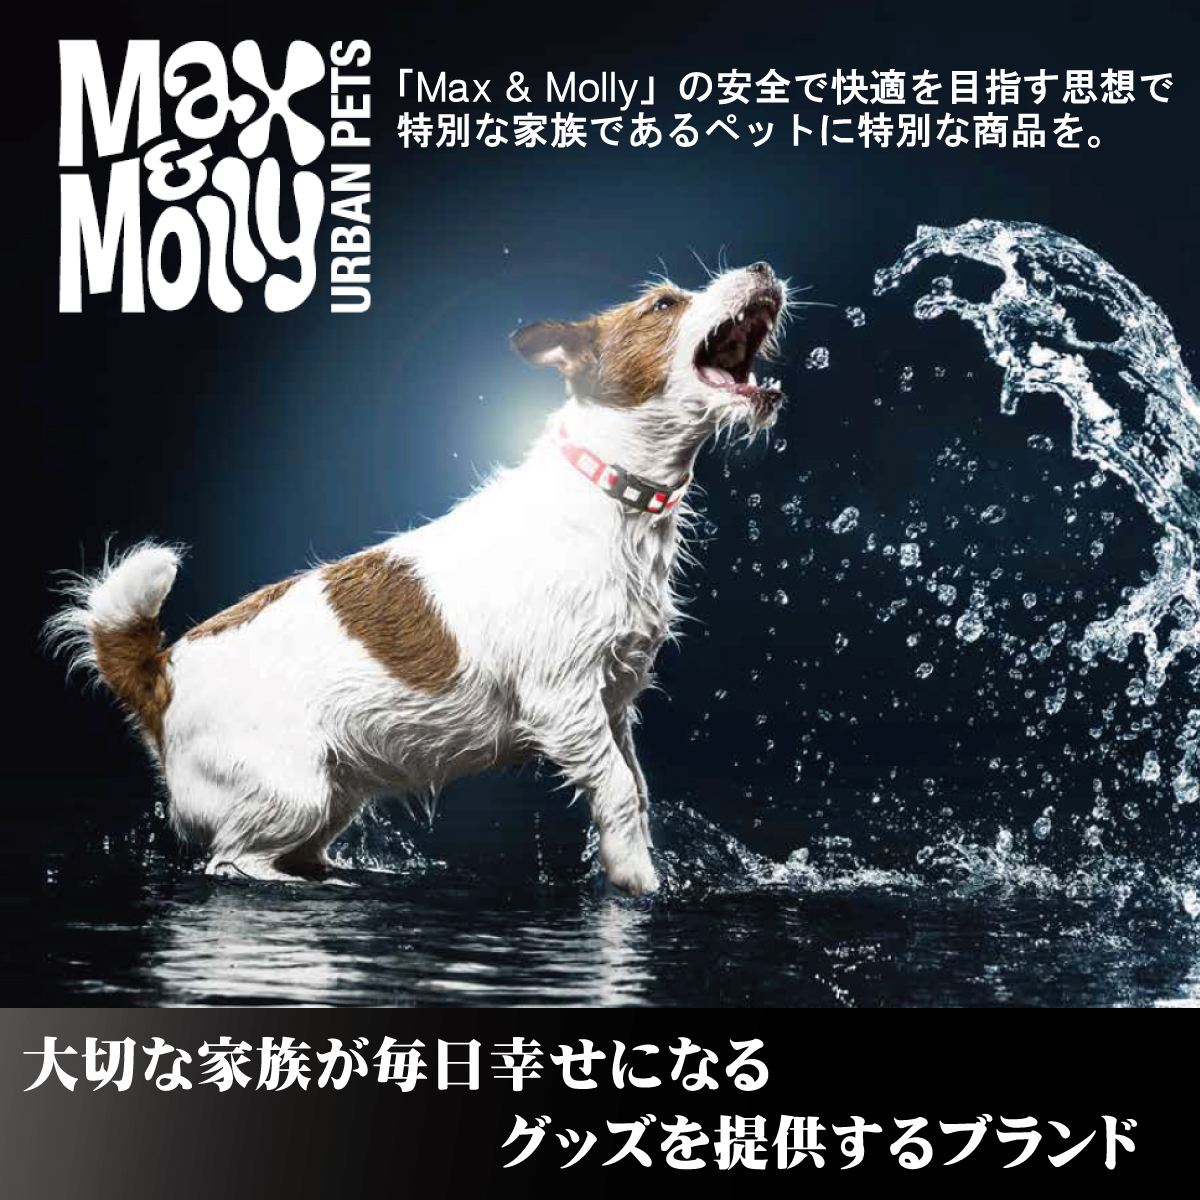 「Max & Molly」の安全で快適を目指す思想で特別な家族であるペットに特別な商品を。